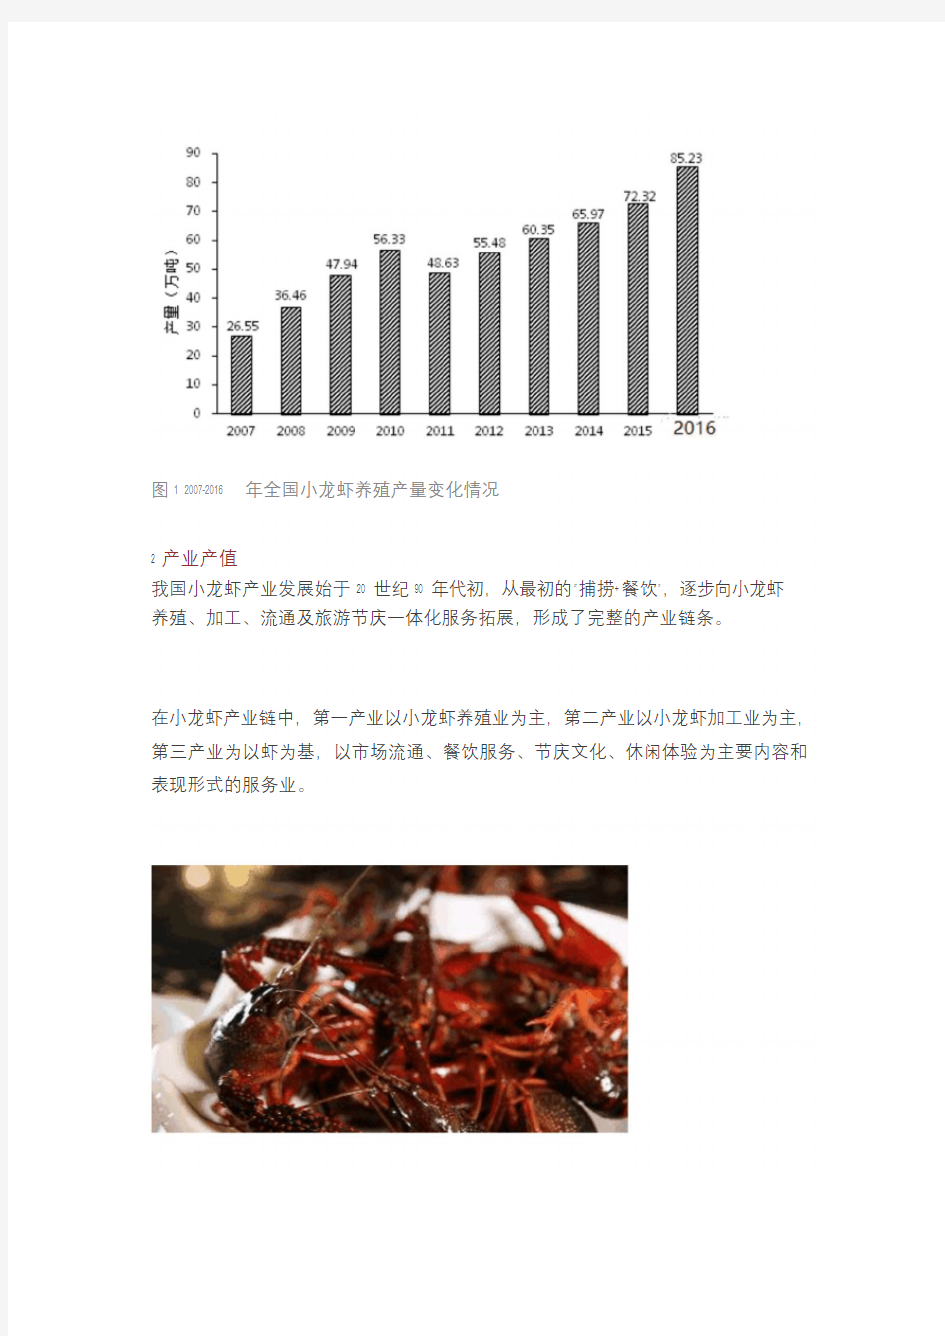 农业部渔业渔政管理局 官方重磅发布 中国小龙虾产业发展报告 完整版 